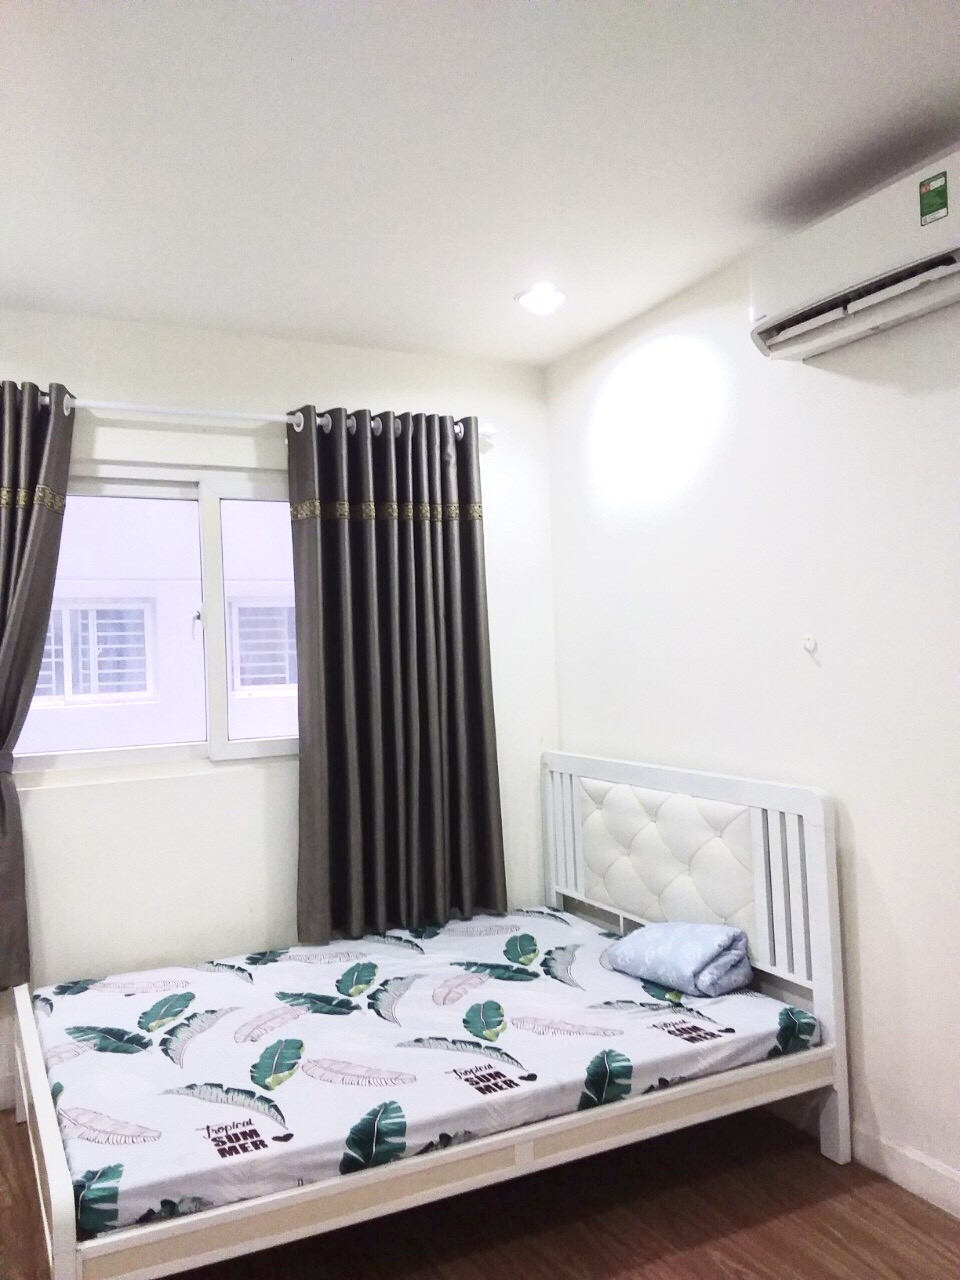 Cho thuê căn hộ 2PN 2WC 86m2 Võ Văn Kiệt, quận 6, đầy đủ nội thất tiện nghi